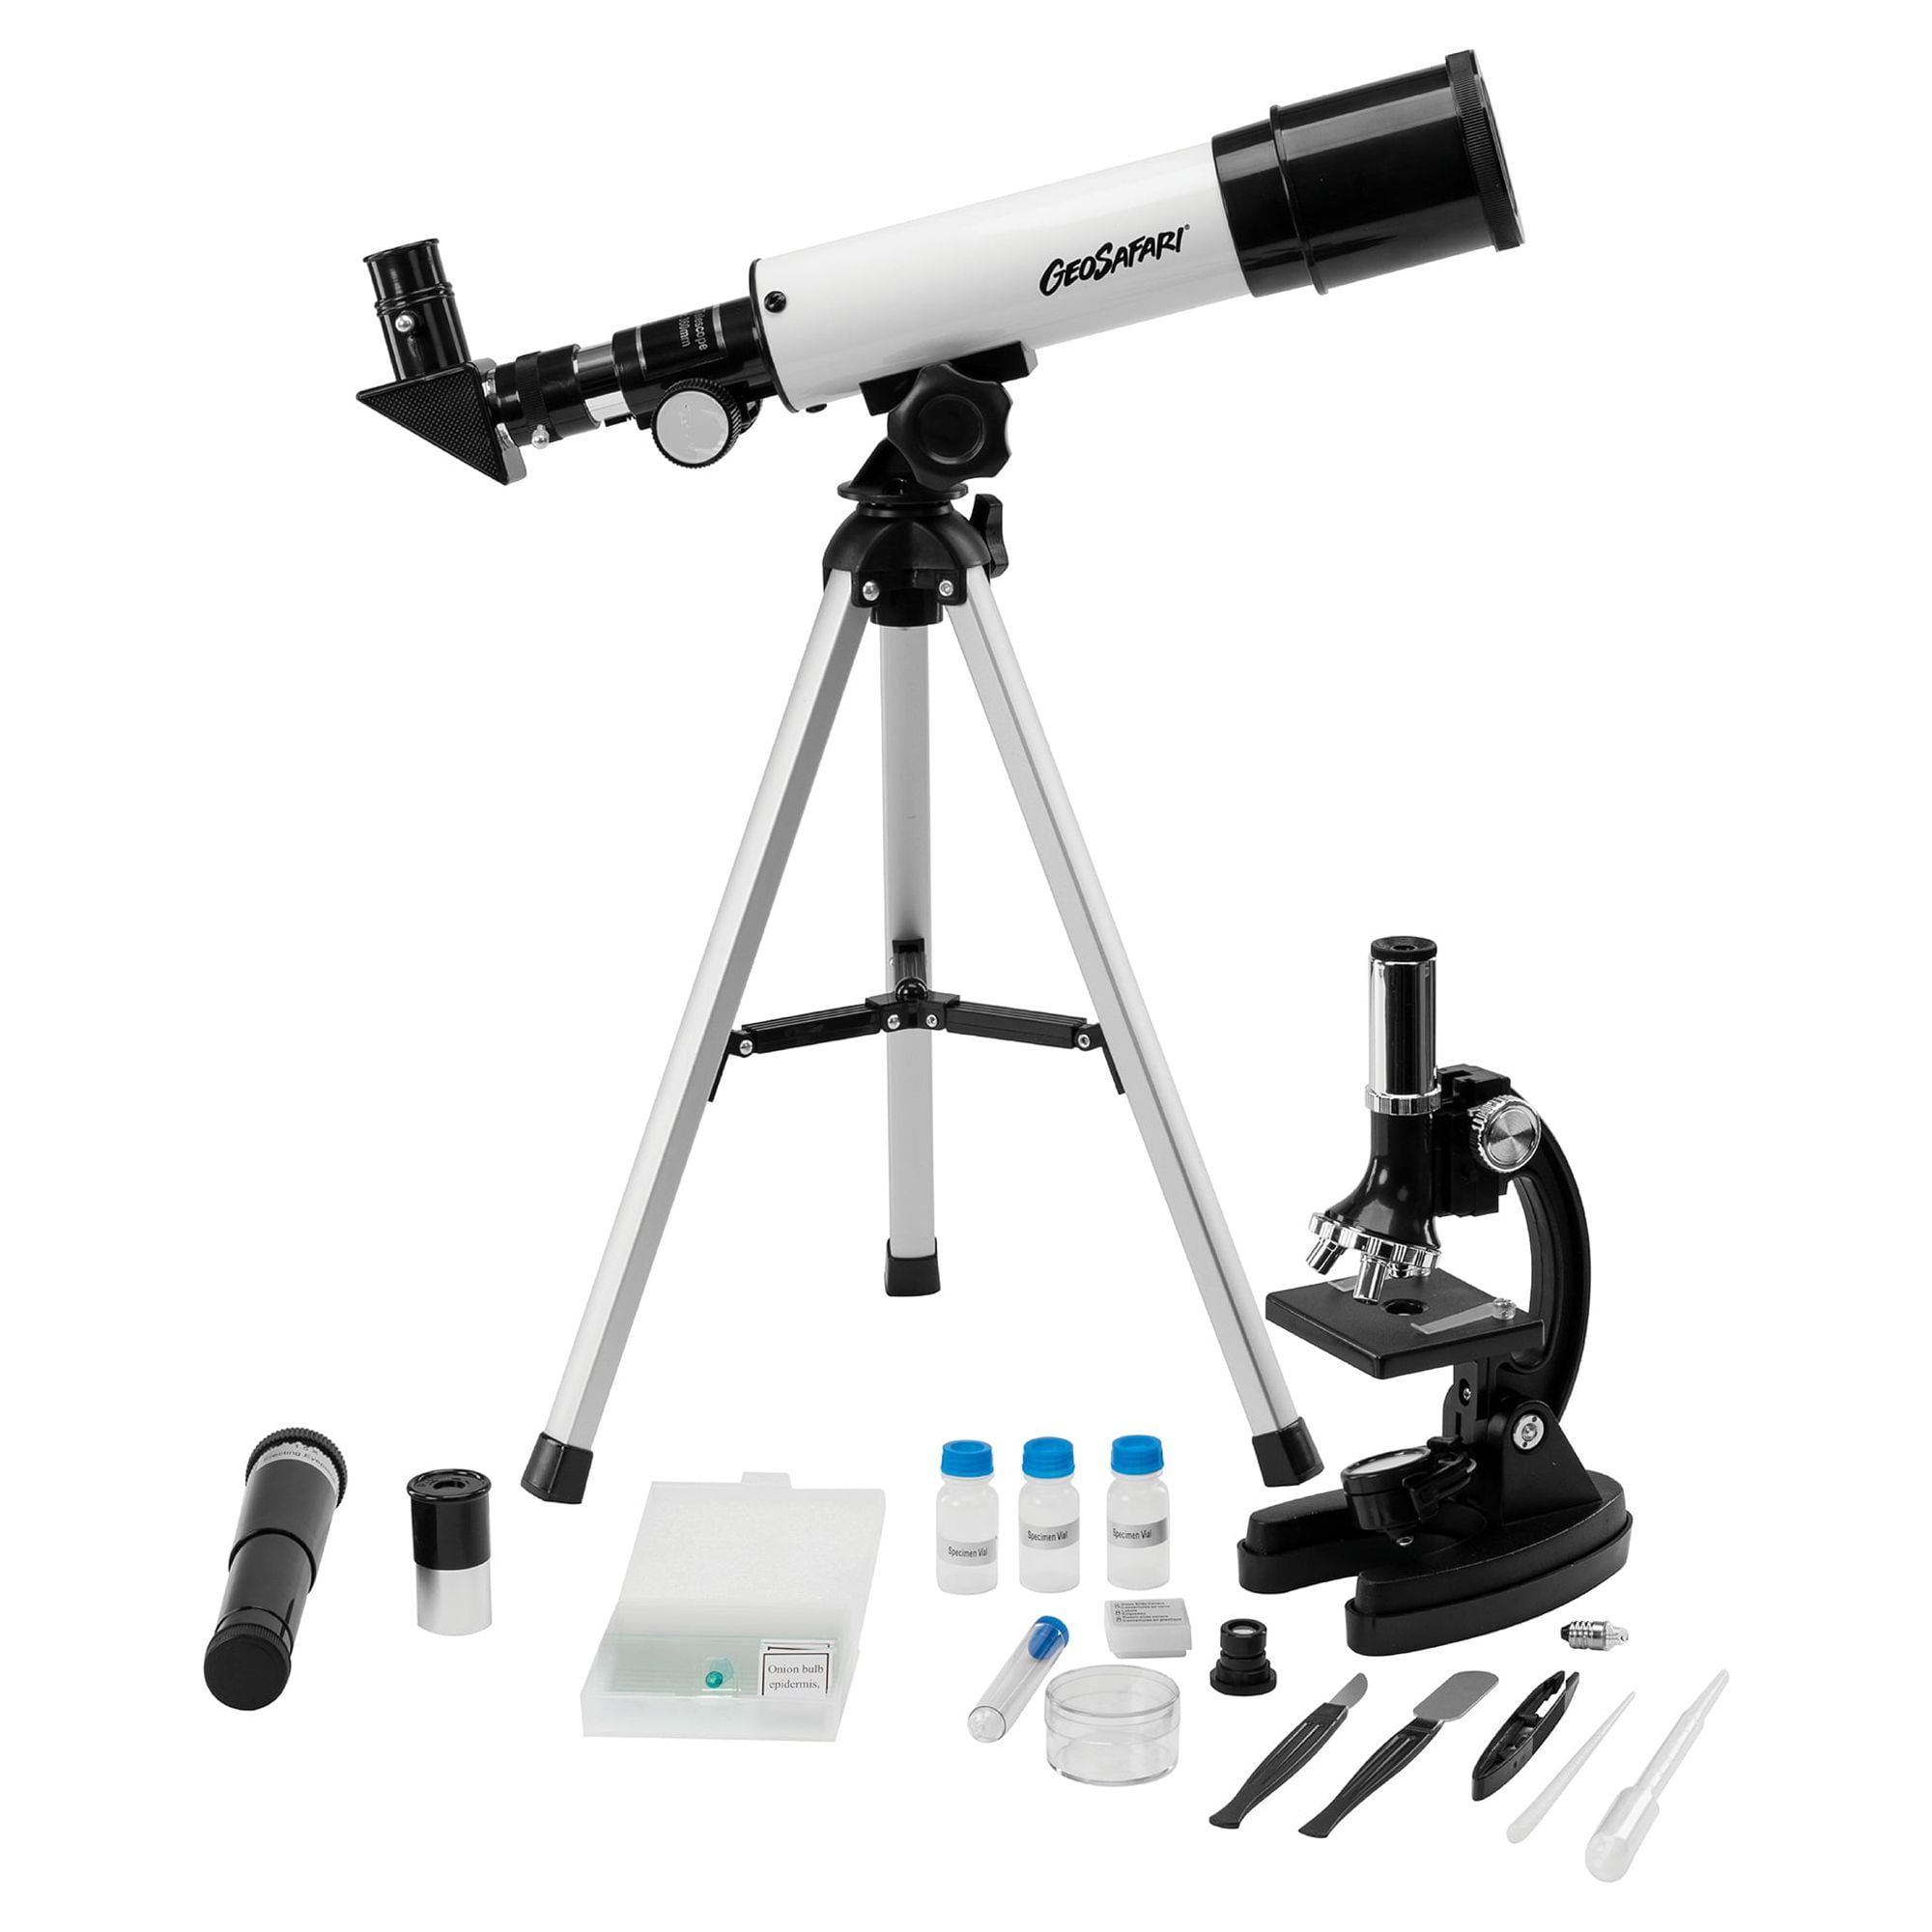 TOYANDONA 1 Jeu Jouet Microscope Kits De Sciences De Léducation Microscope  De Laboratoire Enfants Microscope pour Enfants Débutants Observateur